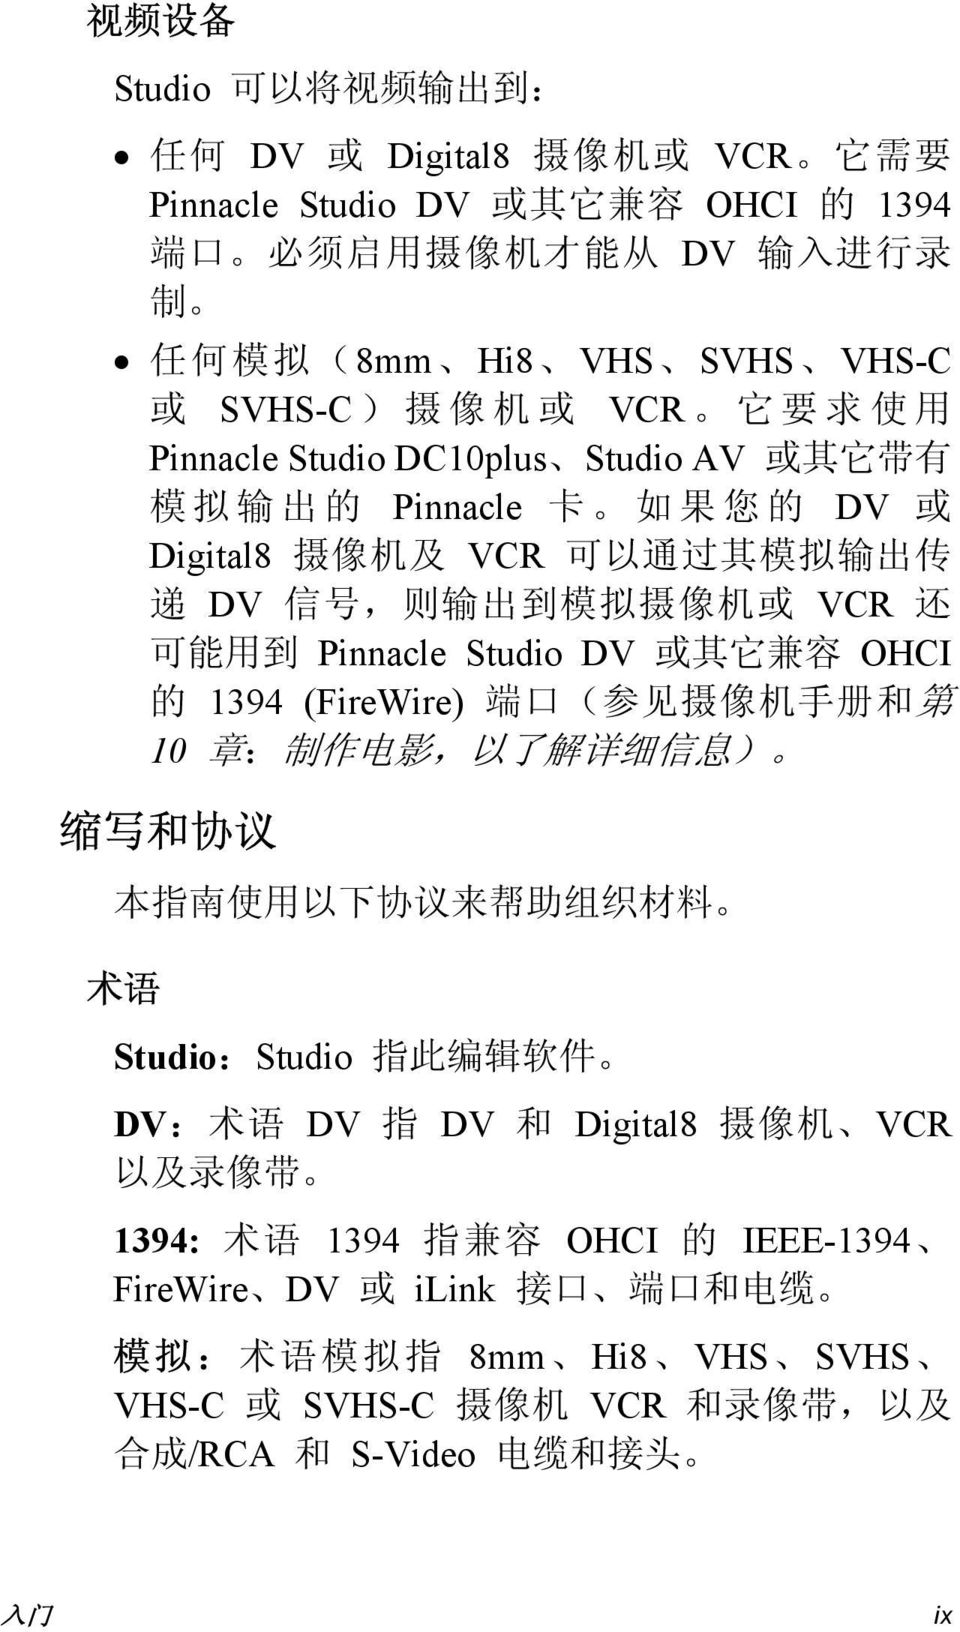 Studio DV 或 其 它 兼 容 OHCI 的 1394 (FireWire) 端 口 ( 参 见 摄 像 机 手 册 和 第 10 章 : 制 作 电 影, 以 了 解 详 细 信 息 ) 缩 写 和 协 议 本 指 南 使 用 以 下 协 议 来 帮 助 组 织 材 料 术 语 Studio:Studio 指 此 编 辑 软 件 DV: 术 语 DV 指 DV 和